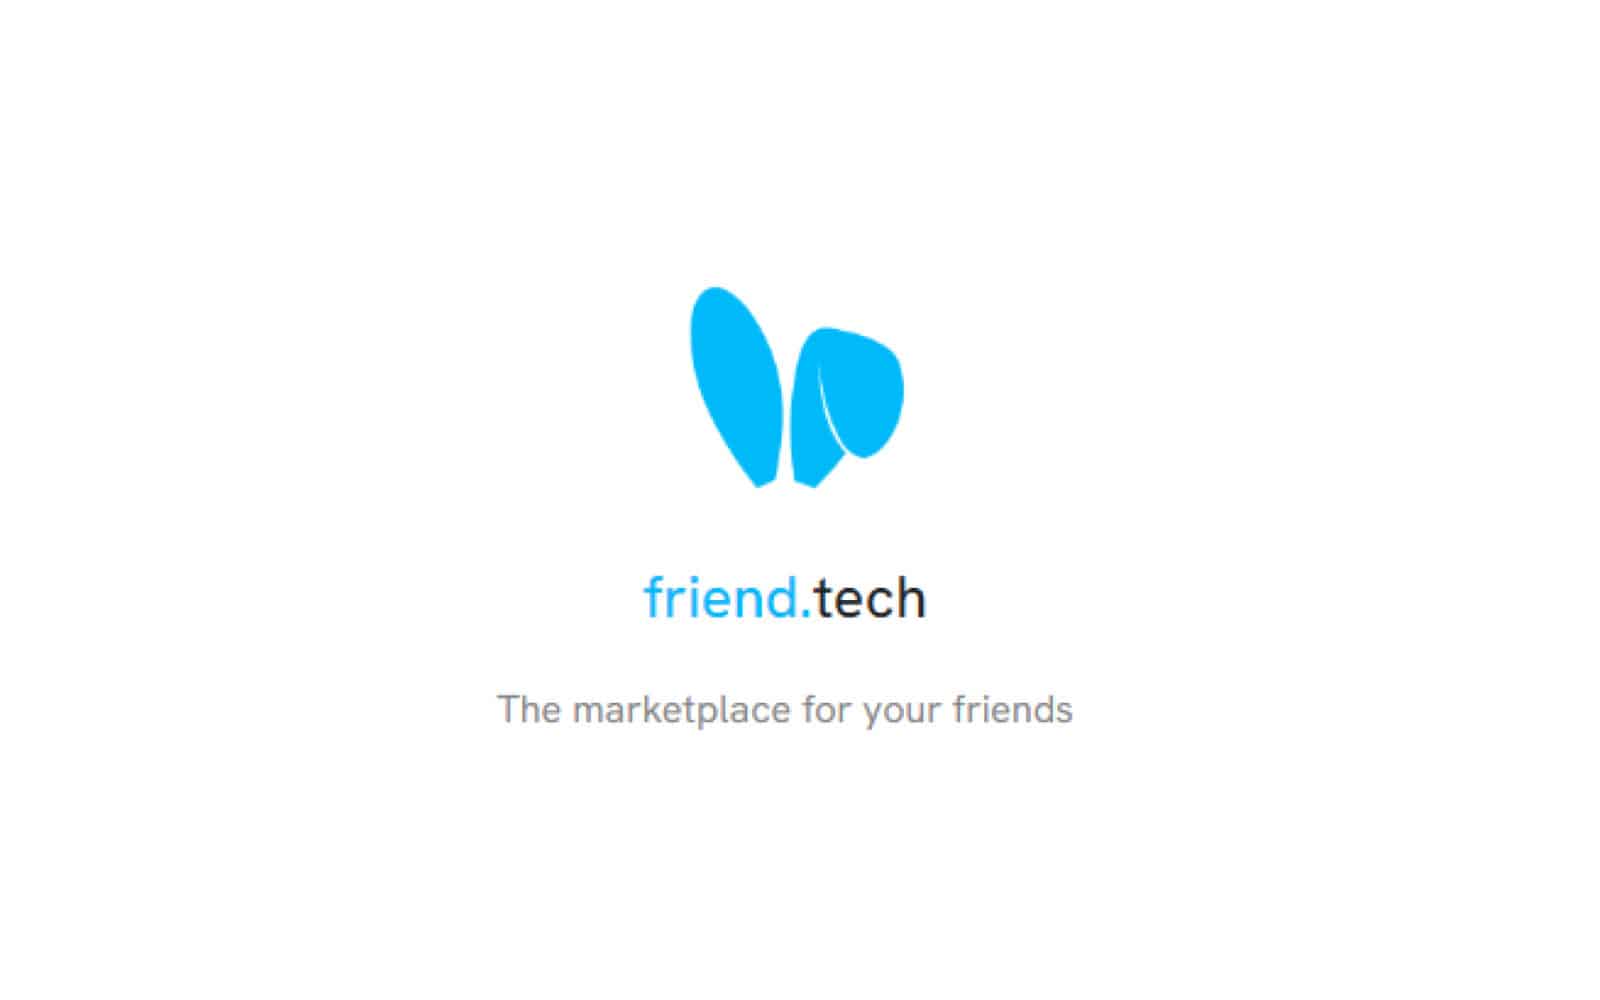 Friend tech